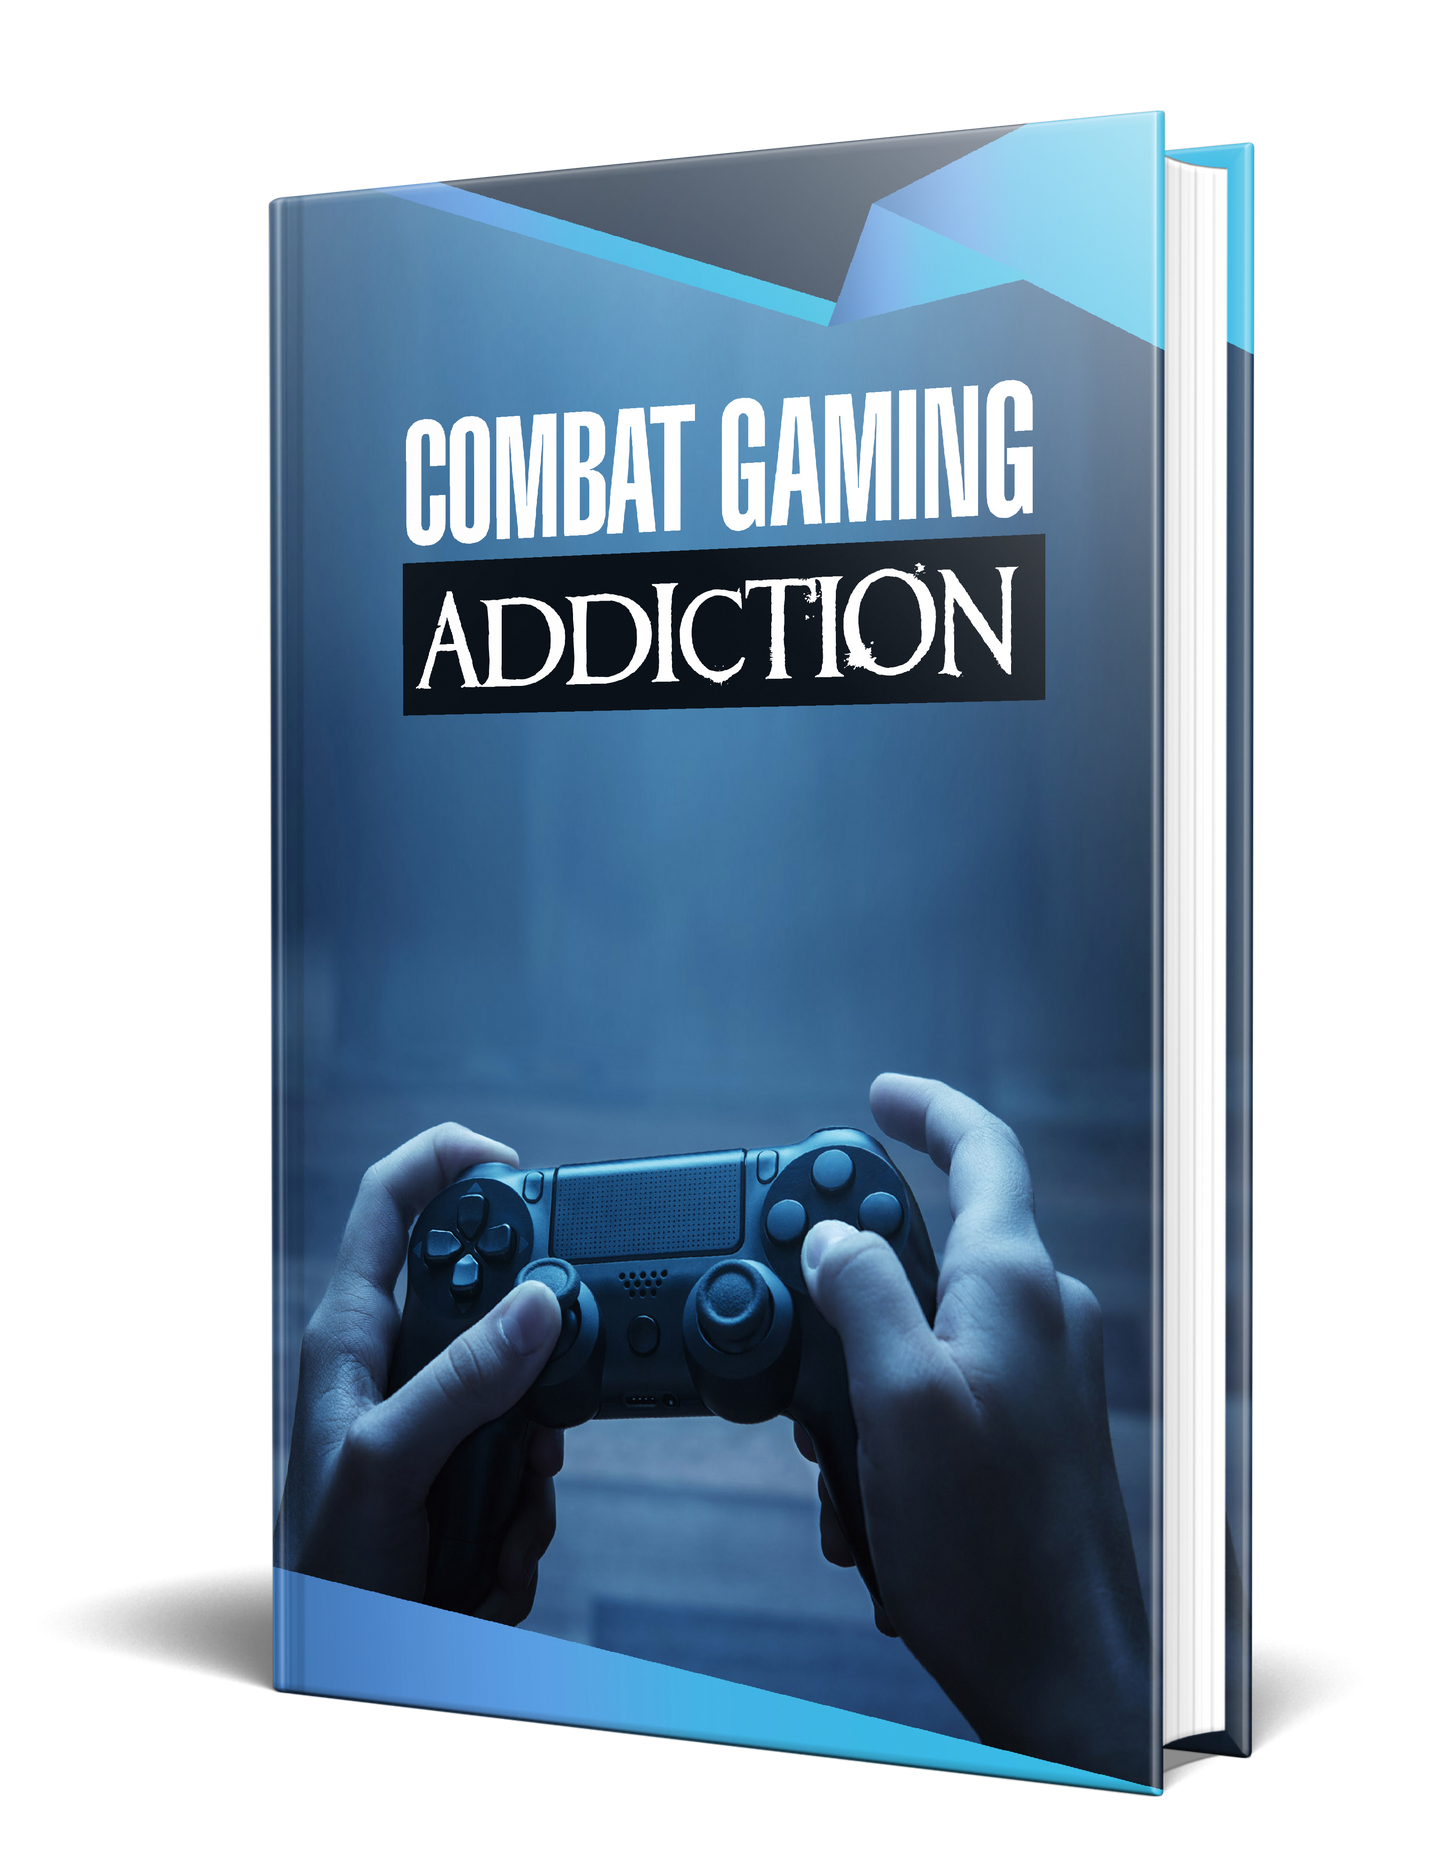 Combat Gaming Addiction